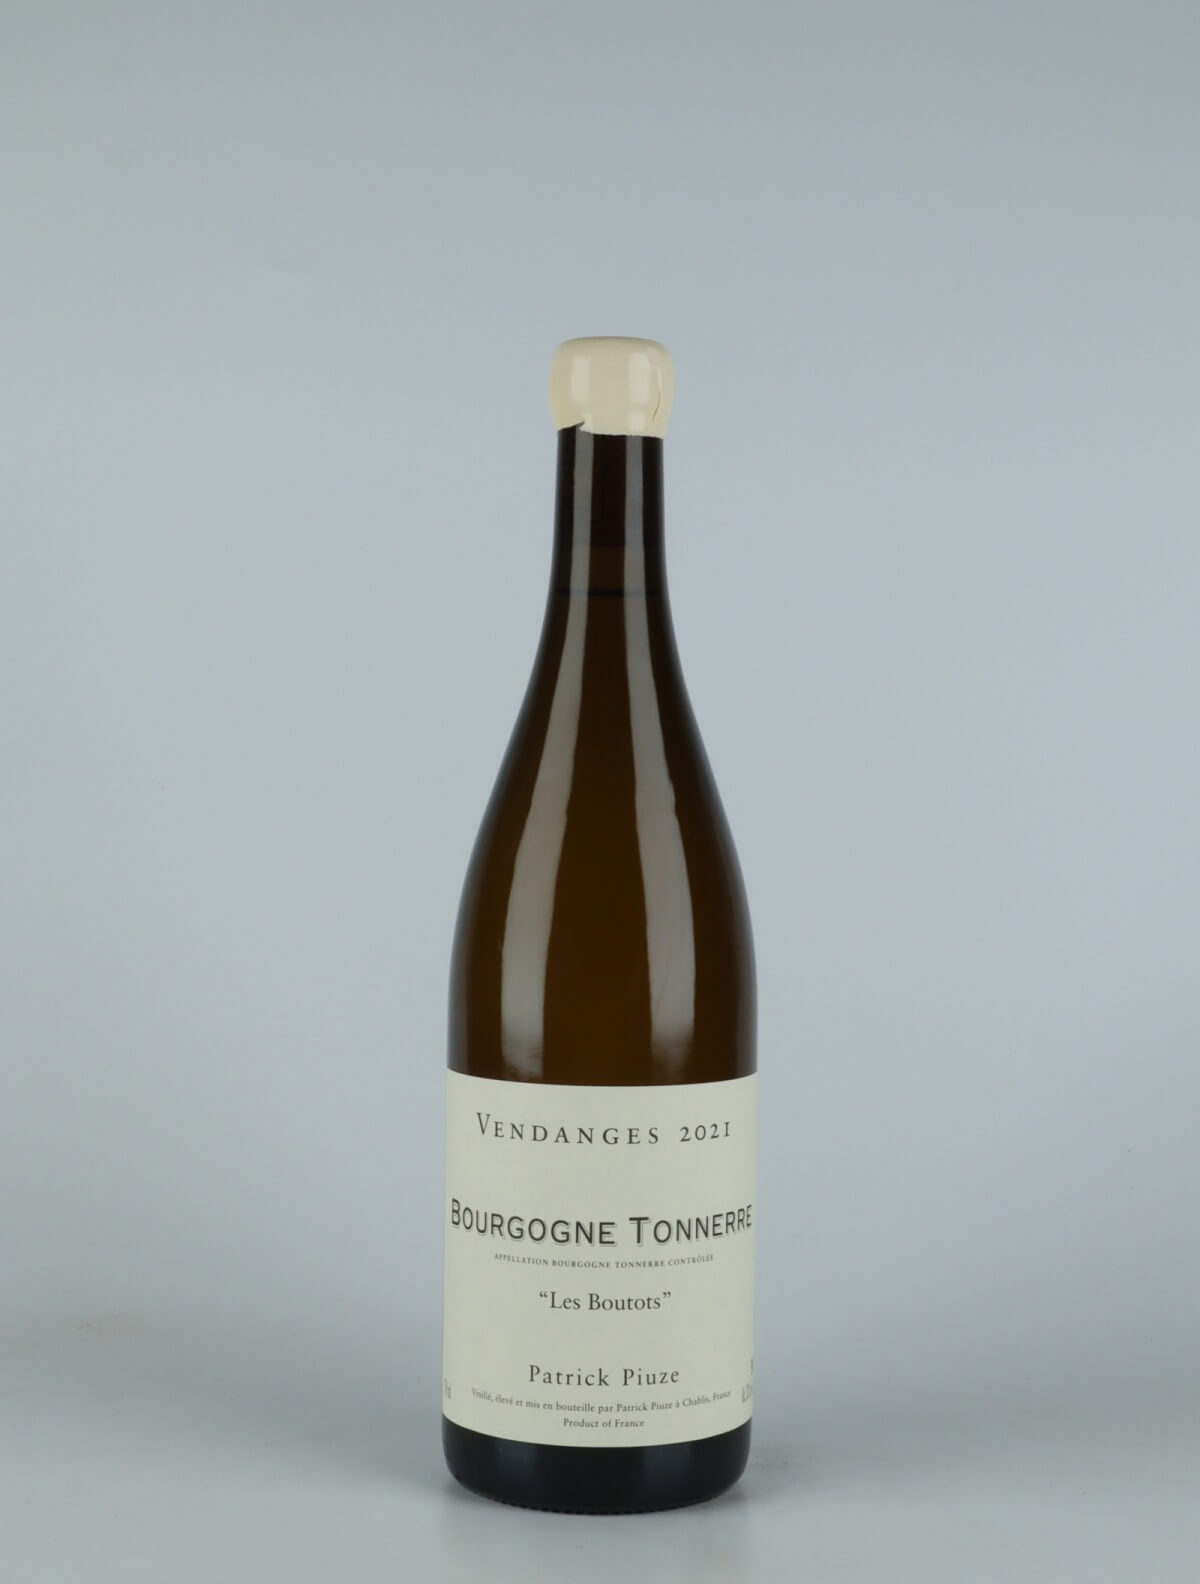 En flaske 2021 Bourgogne Tonnere - Les Boutots Hvidvin fra Patrick Piuze, Bourgogne i Frankrig